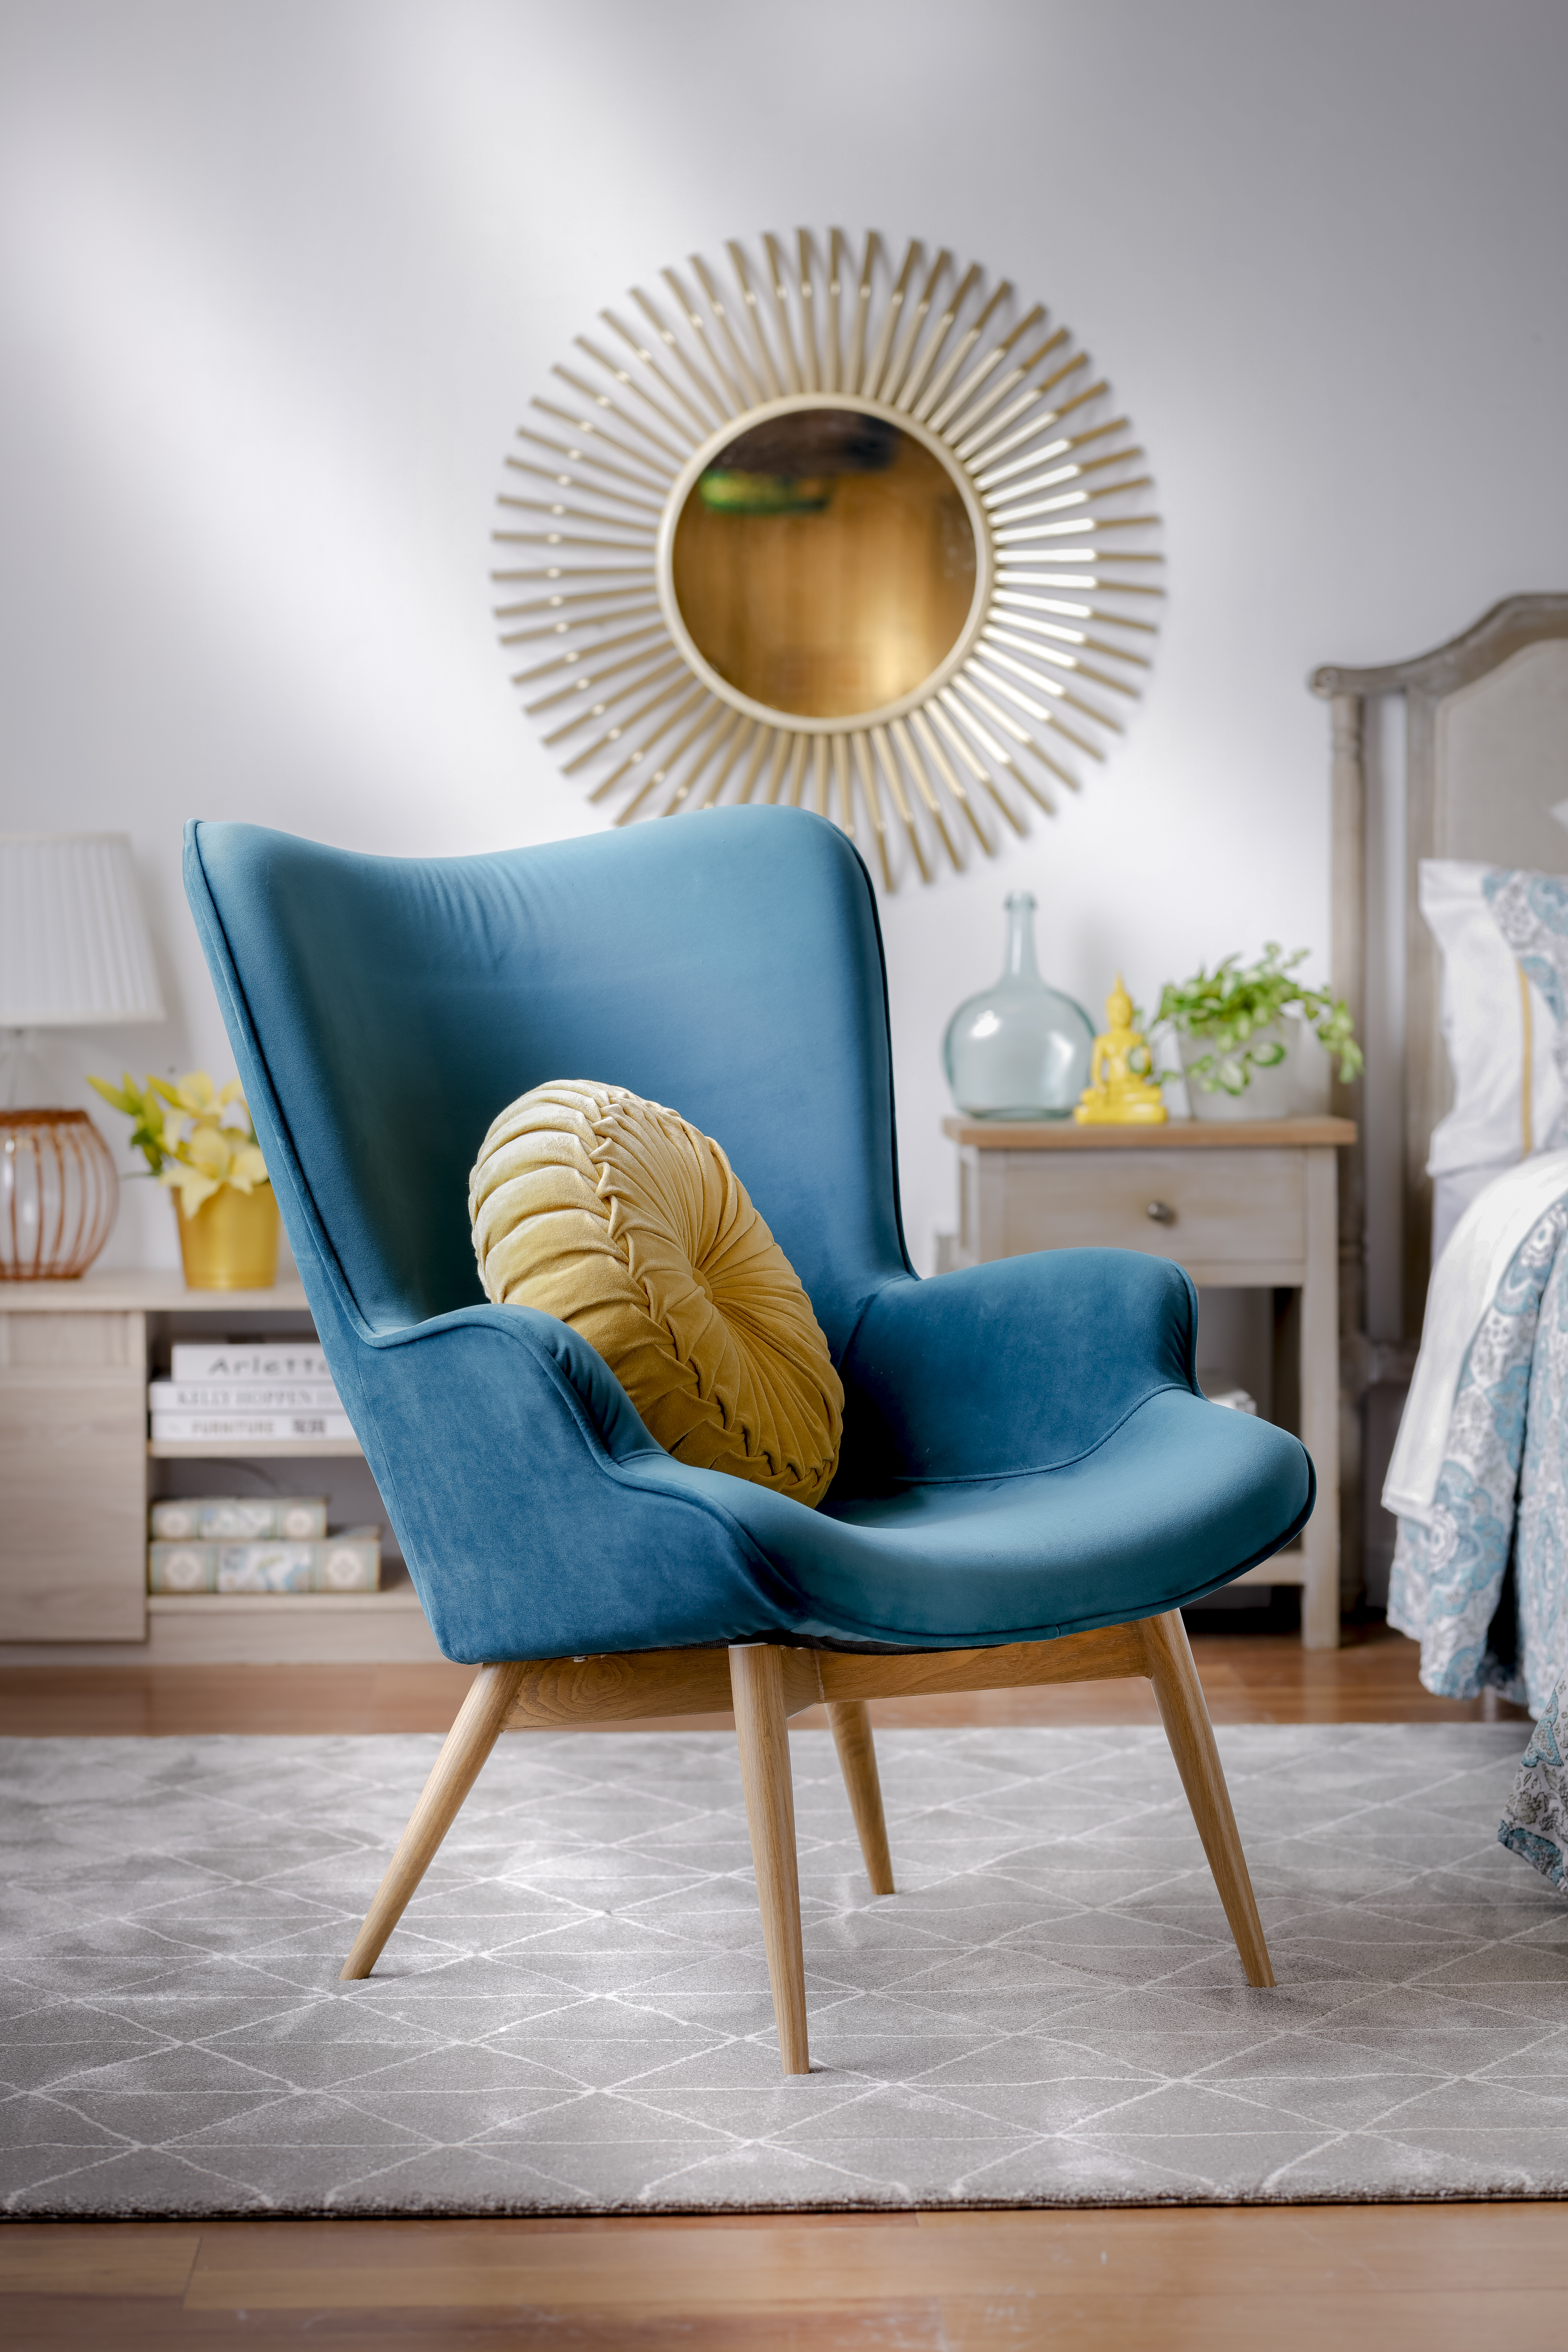 Tendencias de decoración: Ambiente de sala de estar con poltrona terciopelo color calipso y cojín redondo en tono mostaza. De fondo un espejo dorado.